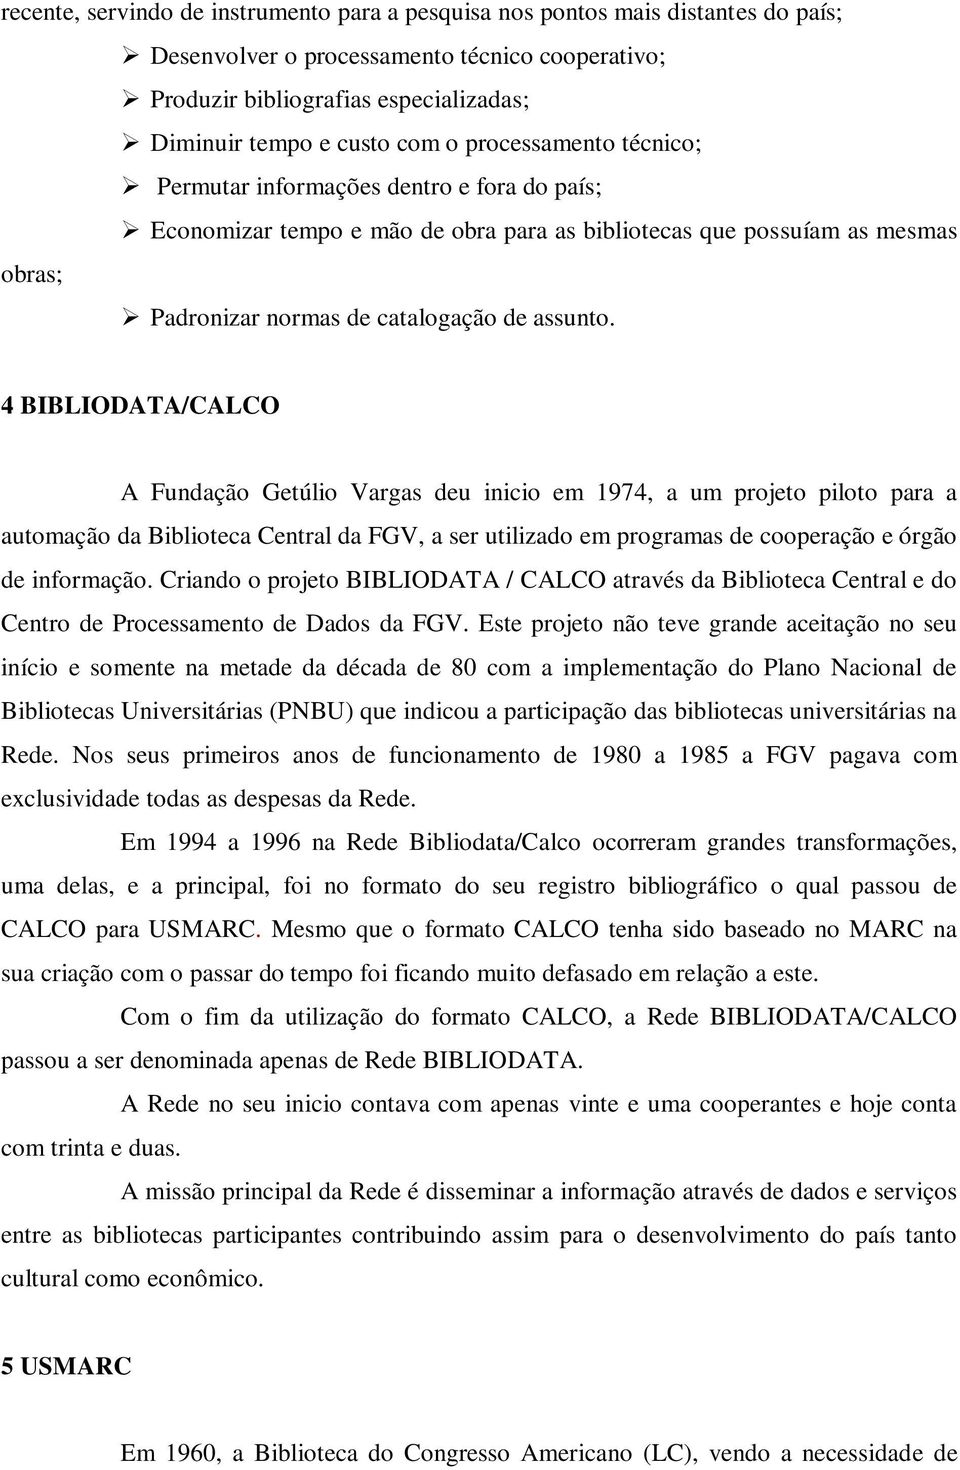 4 BIBLIODATA/CALCO A Fundação Getúlio Vargas deu inicio em 1974, a um projeto piloto para a automação da Biblioteca Central da FGV, a ser utilizado em programas de cooperação e órgão de informação.